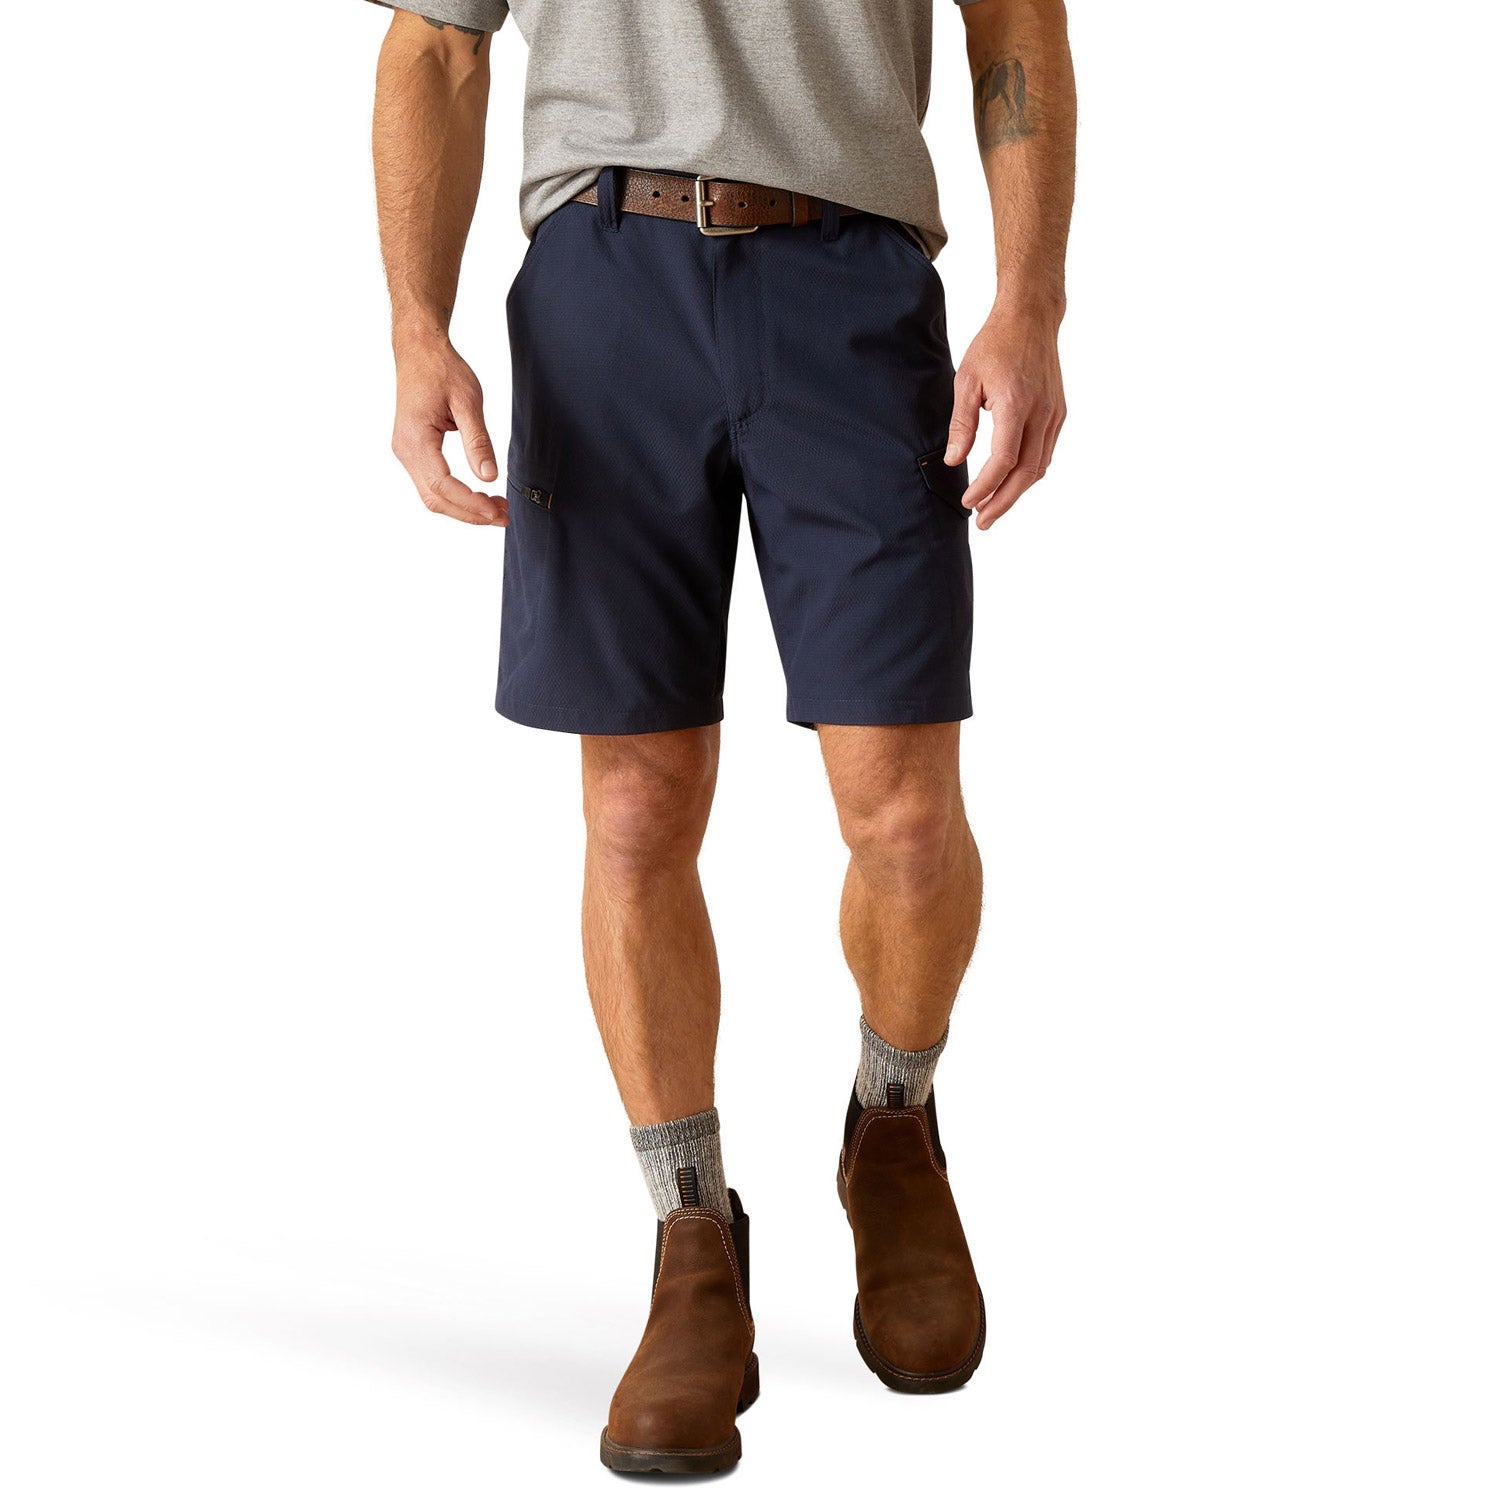 Ariat Men's Rebar WorkFlow 9" Ultralight Short - Work World - Workwear, Work Boots, Safety Gear